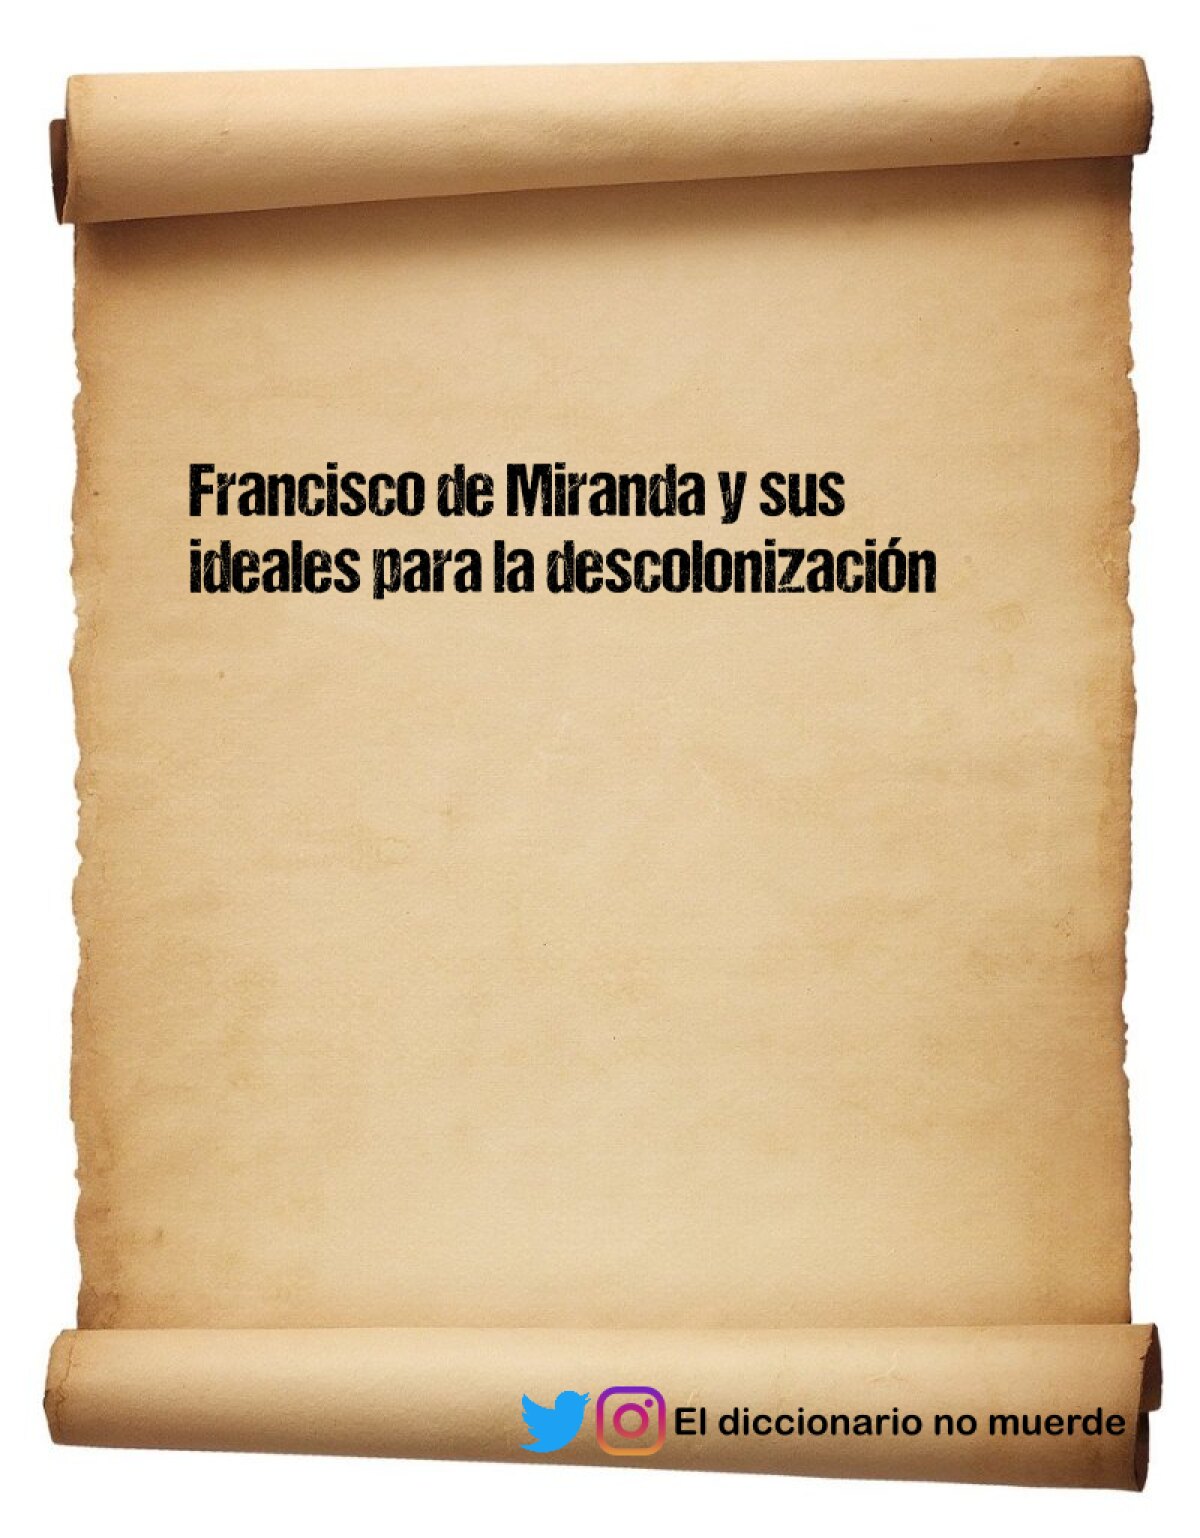 Francisco de Miranda y sus ideales para la descolonización